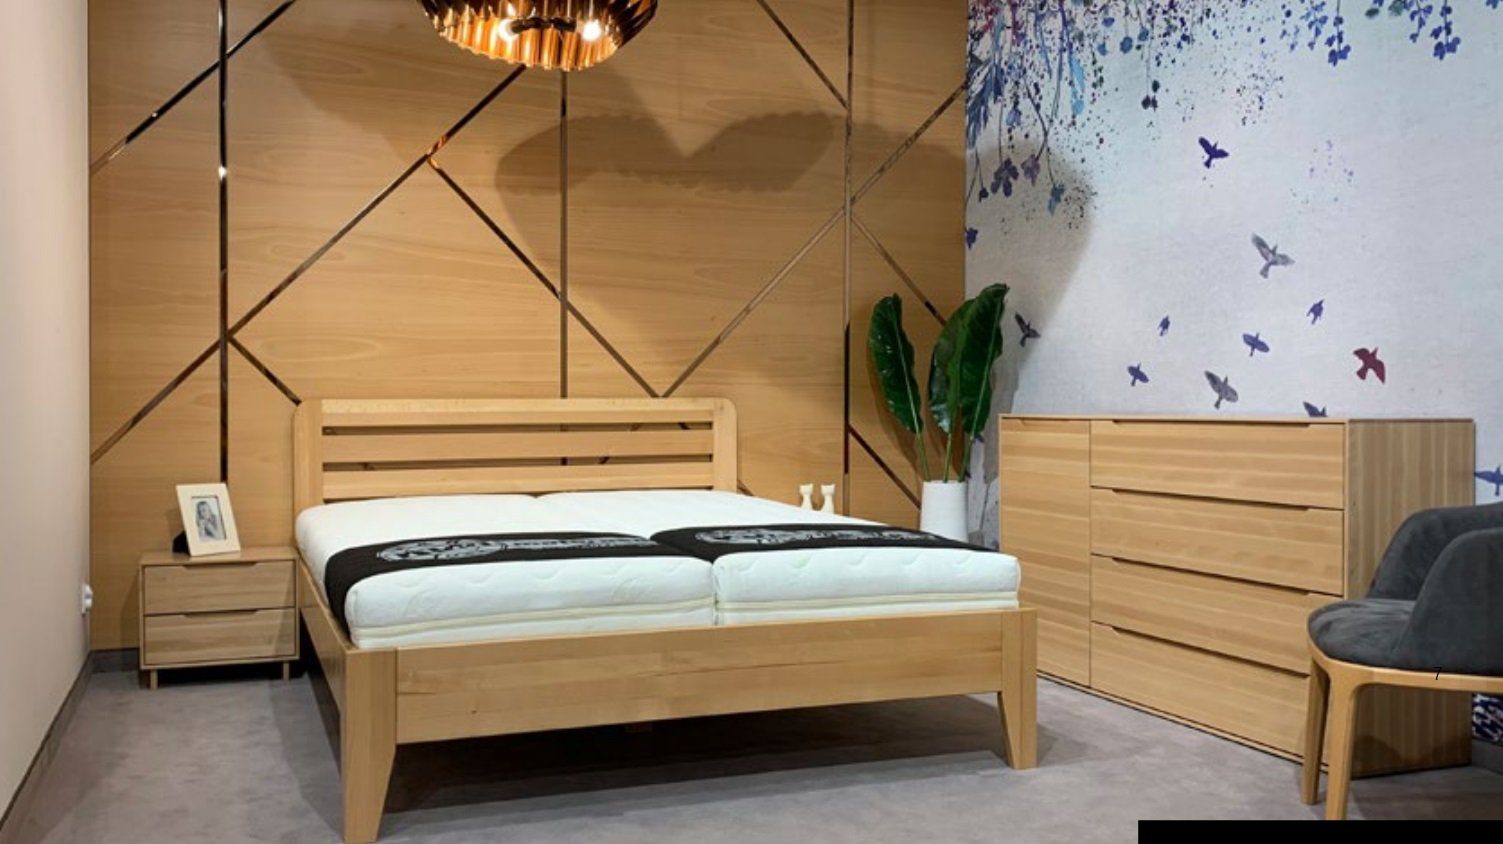 JVmoebel Holzbett, Schlafzimmer Echtes Holzbett Möbel Stil Massive Betten Hotel